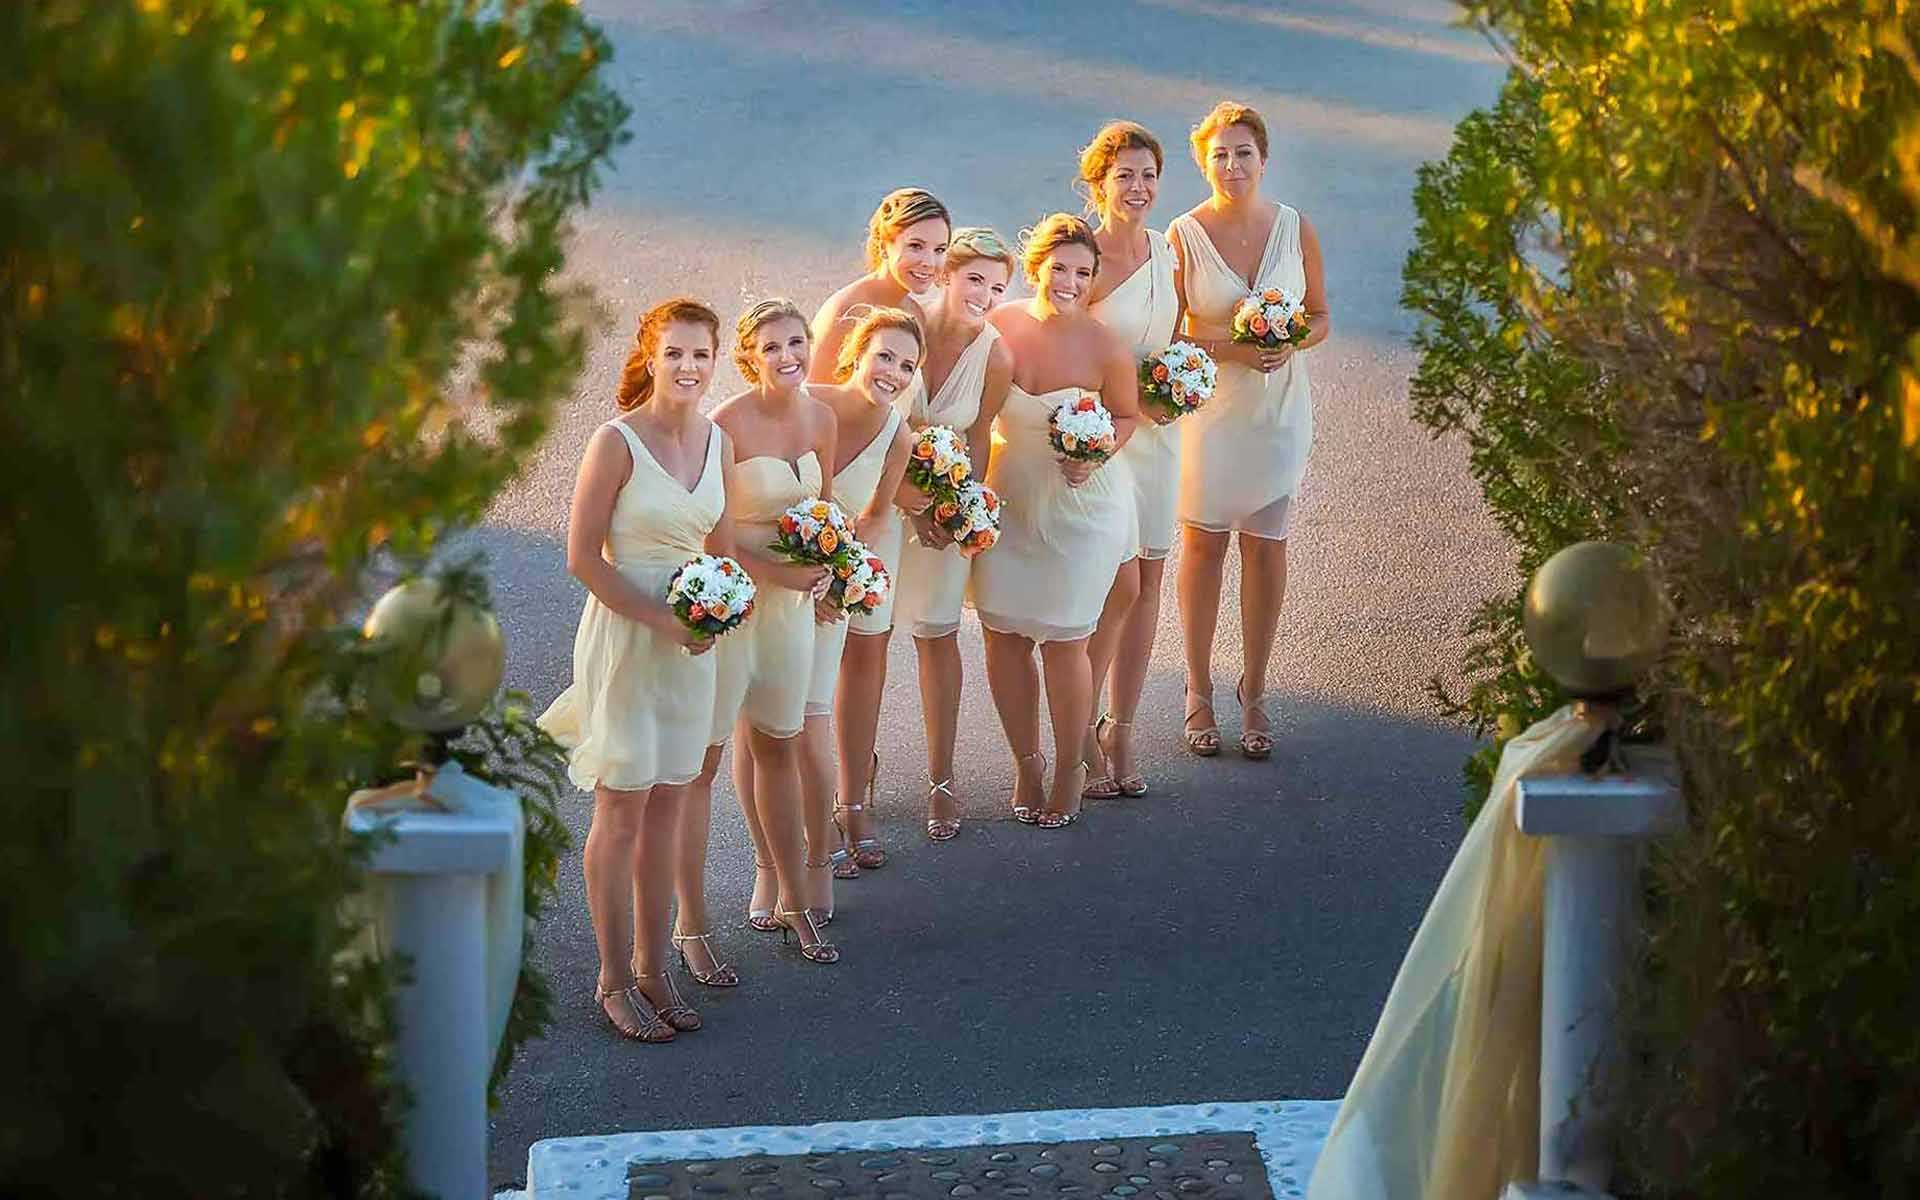 Τhe-Beautiful-Bridesmaids-Smile-At-The-Lens-While-Holding-Their-Bouquets-With-White-And-Orange-Flowers